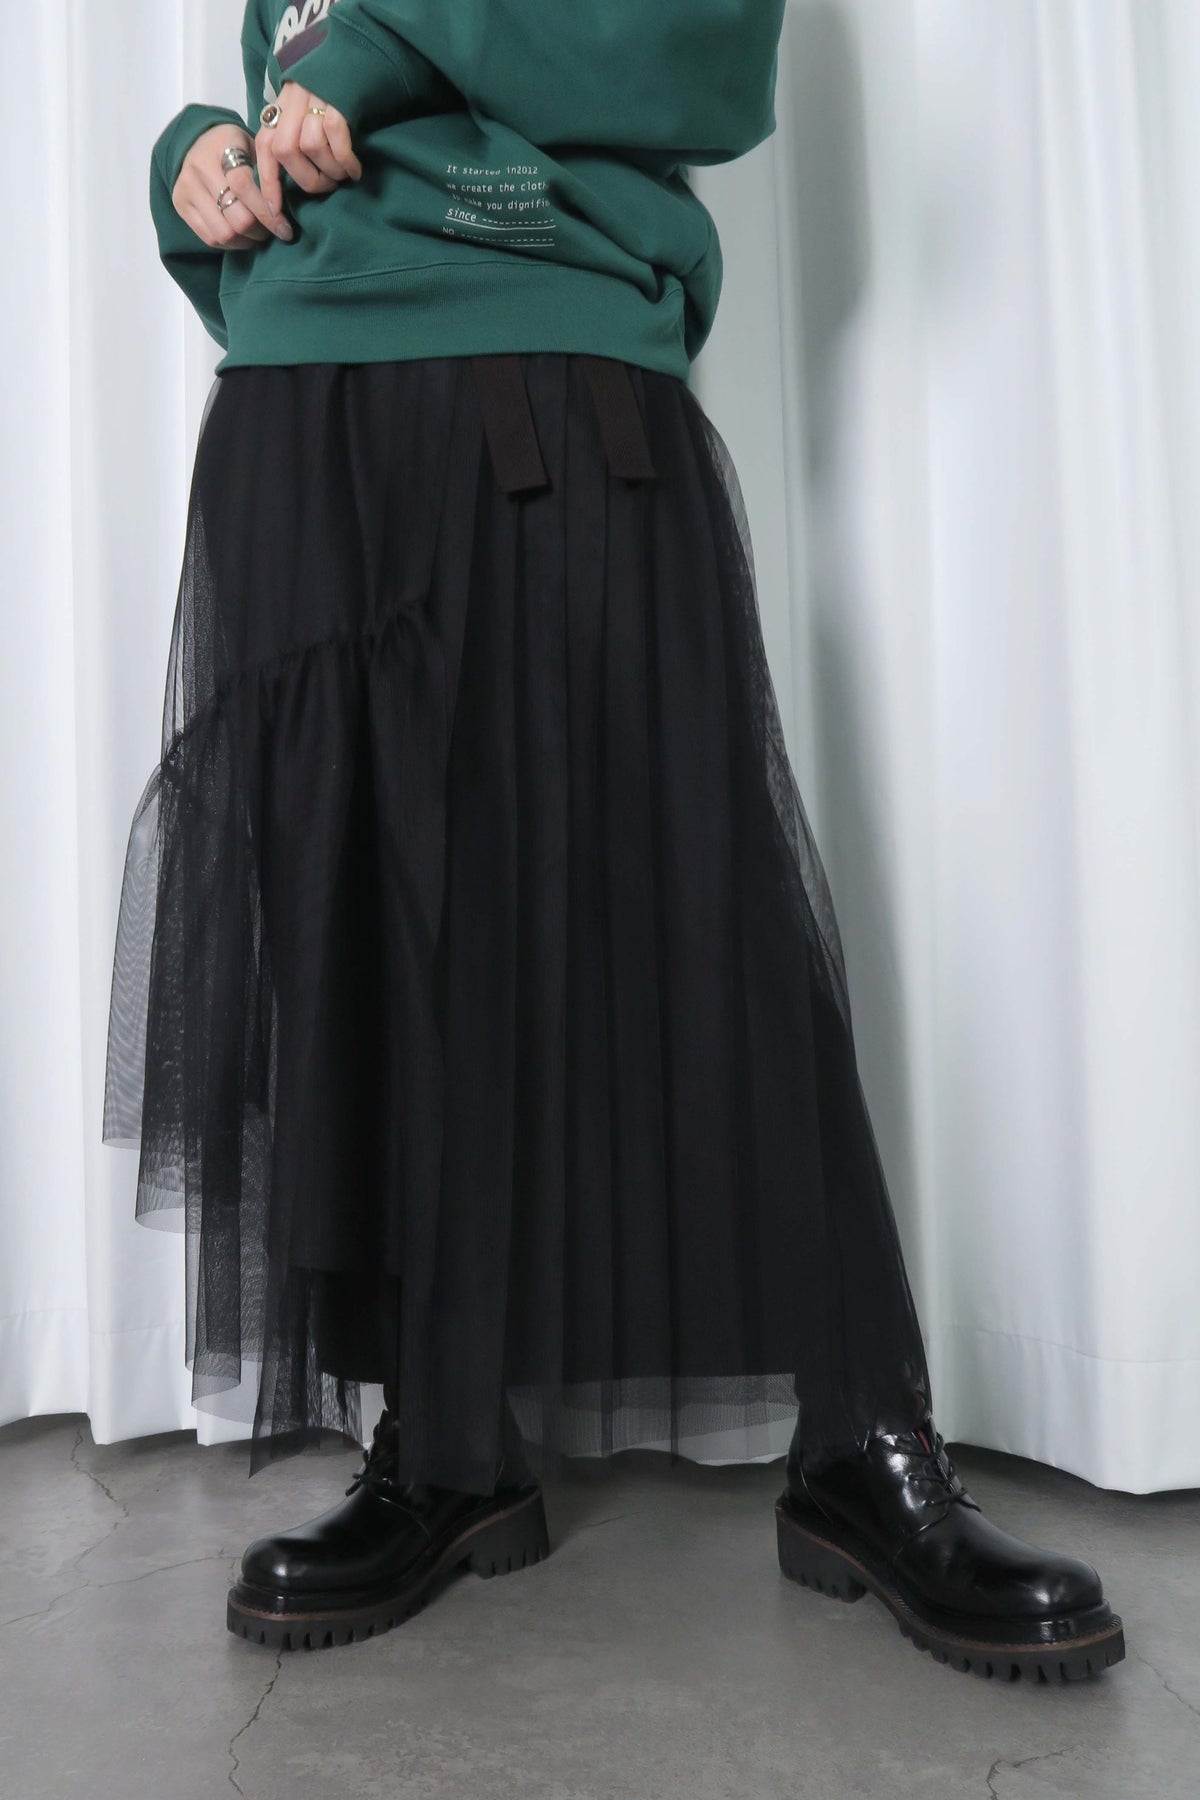 MARECHAL TERRE (マルシャルテル) ZMT236SK611 チュールプリーツスカート シルバー ブラック 巻きスカート